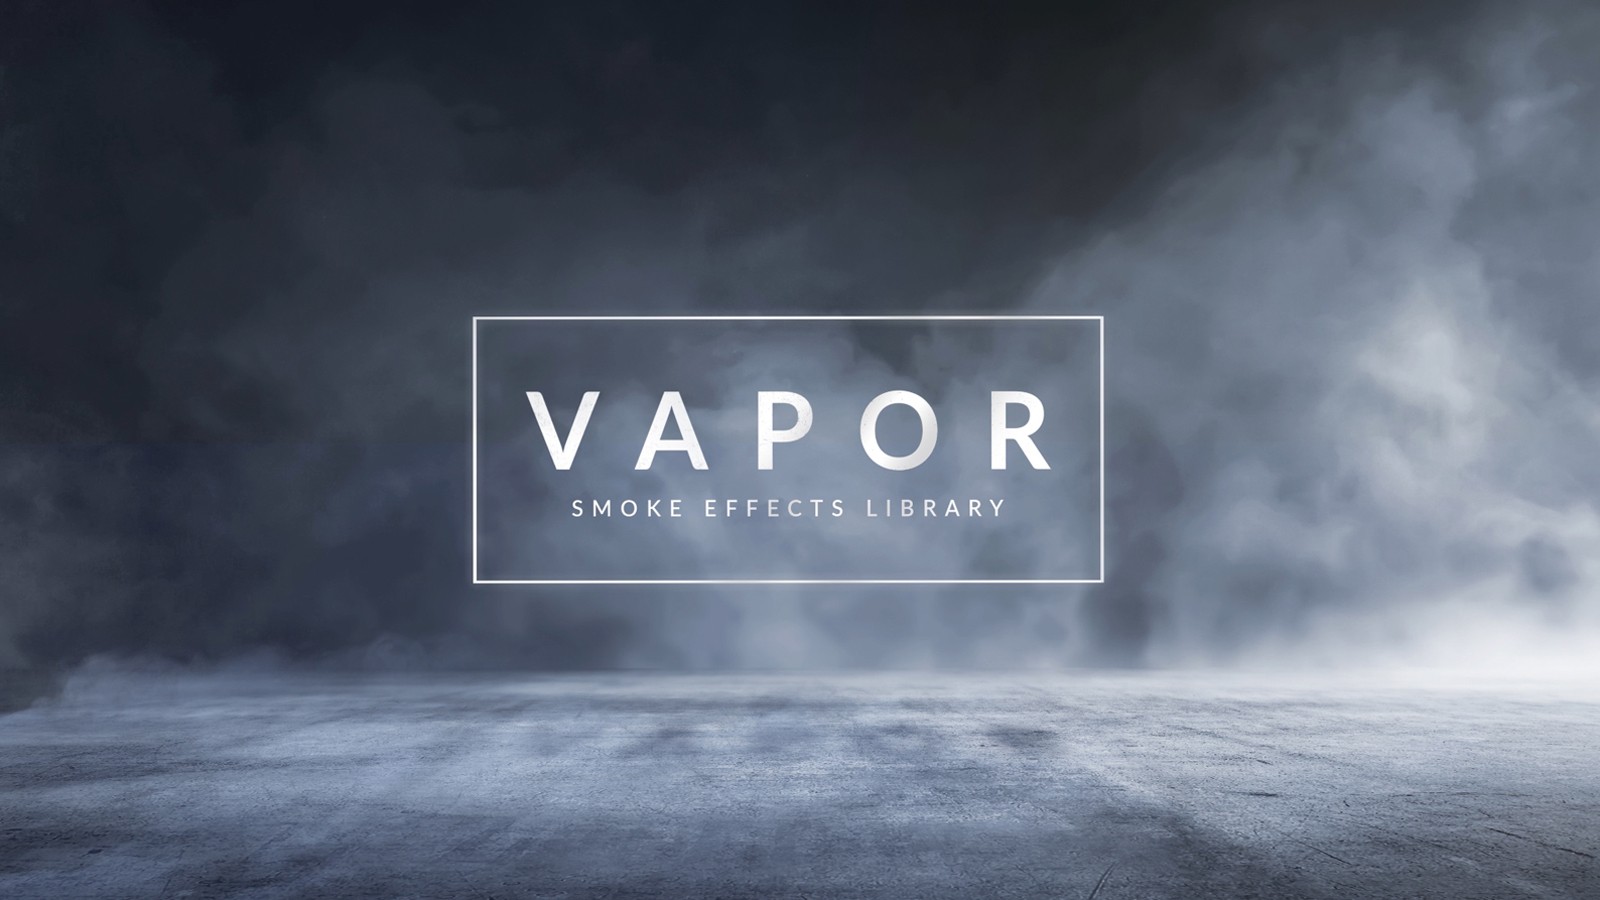 VAPOR 100 SMOKE FOG EFFECTS ROCKETSTOCK Free After Effects Rocketstock Download